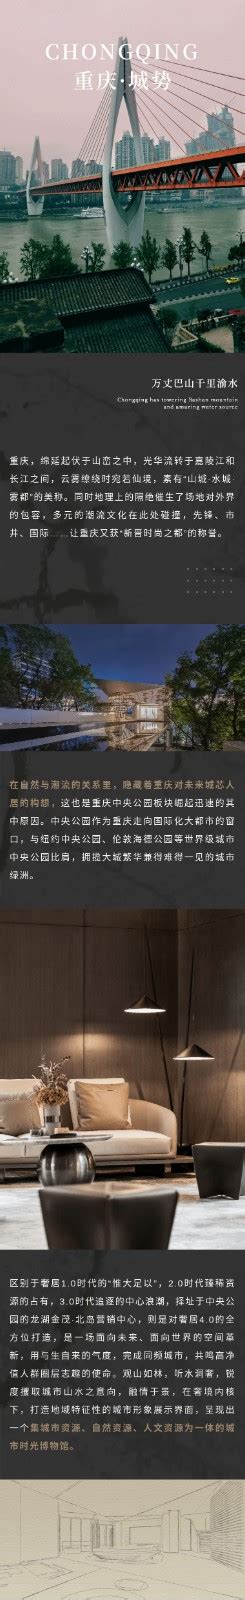 龙湖区召开企业服务平台建设工作会议探索优化营商环境新路子